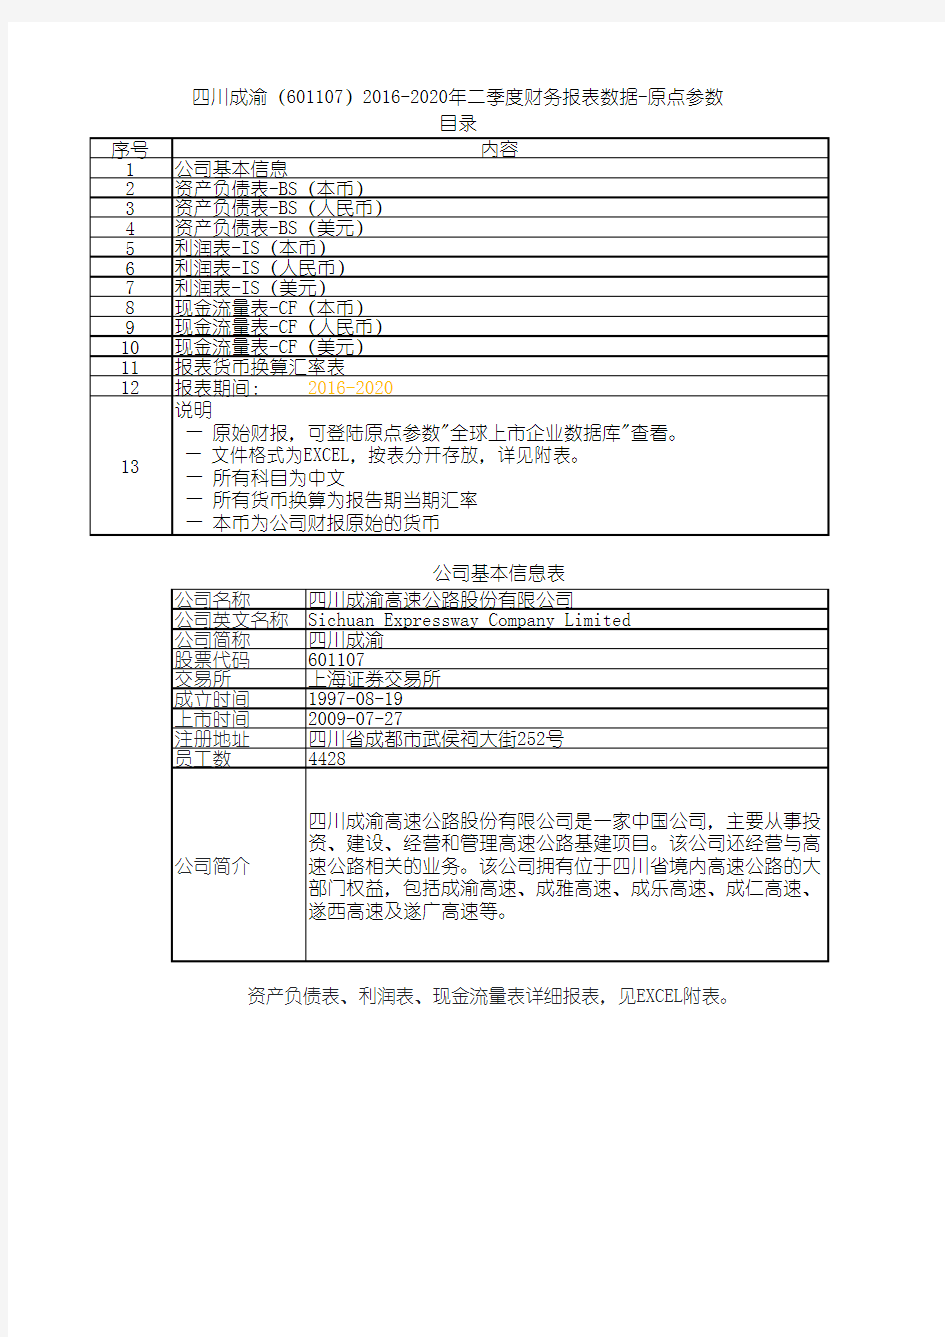 四川成渝(601107)2016-2020年二季度财务报表数据-原点参数